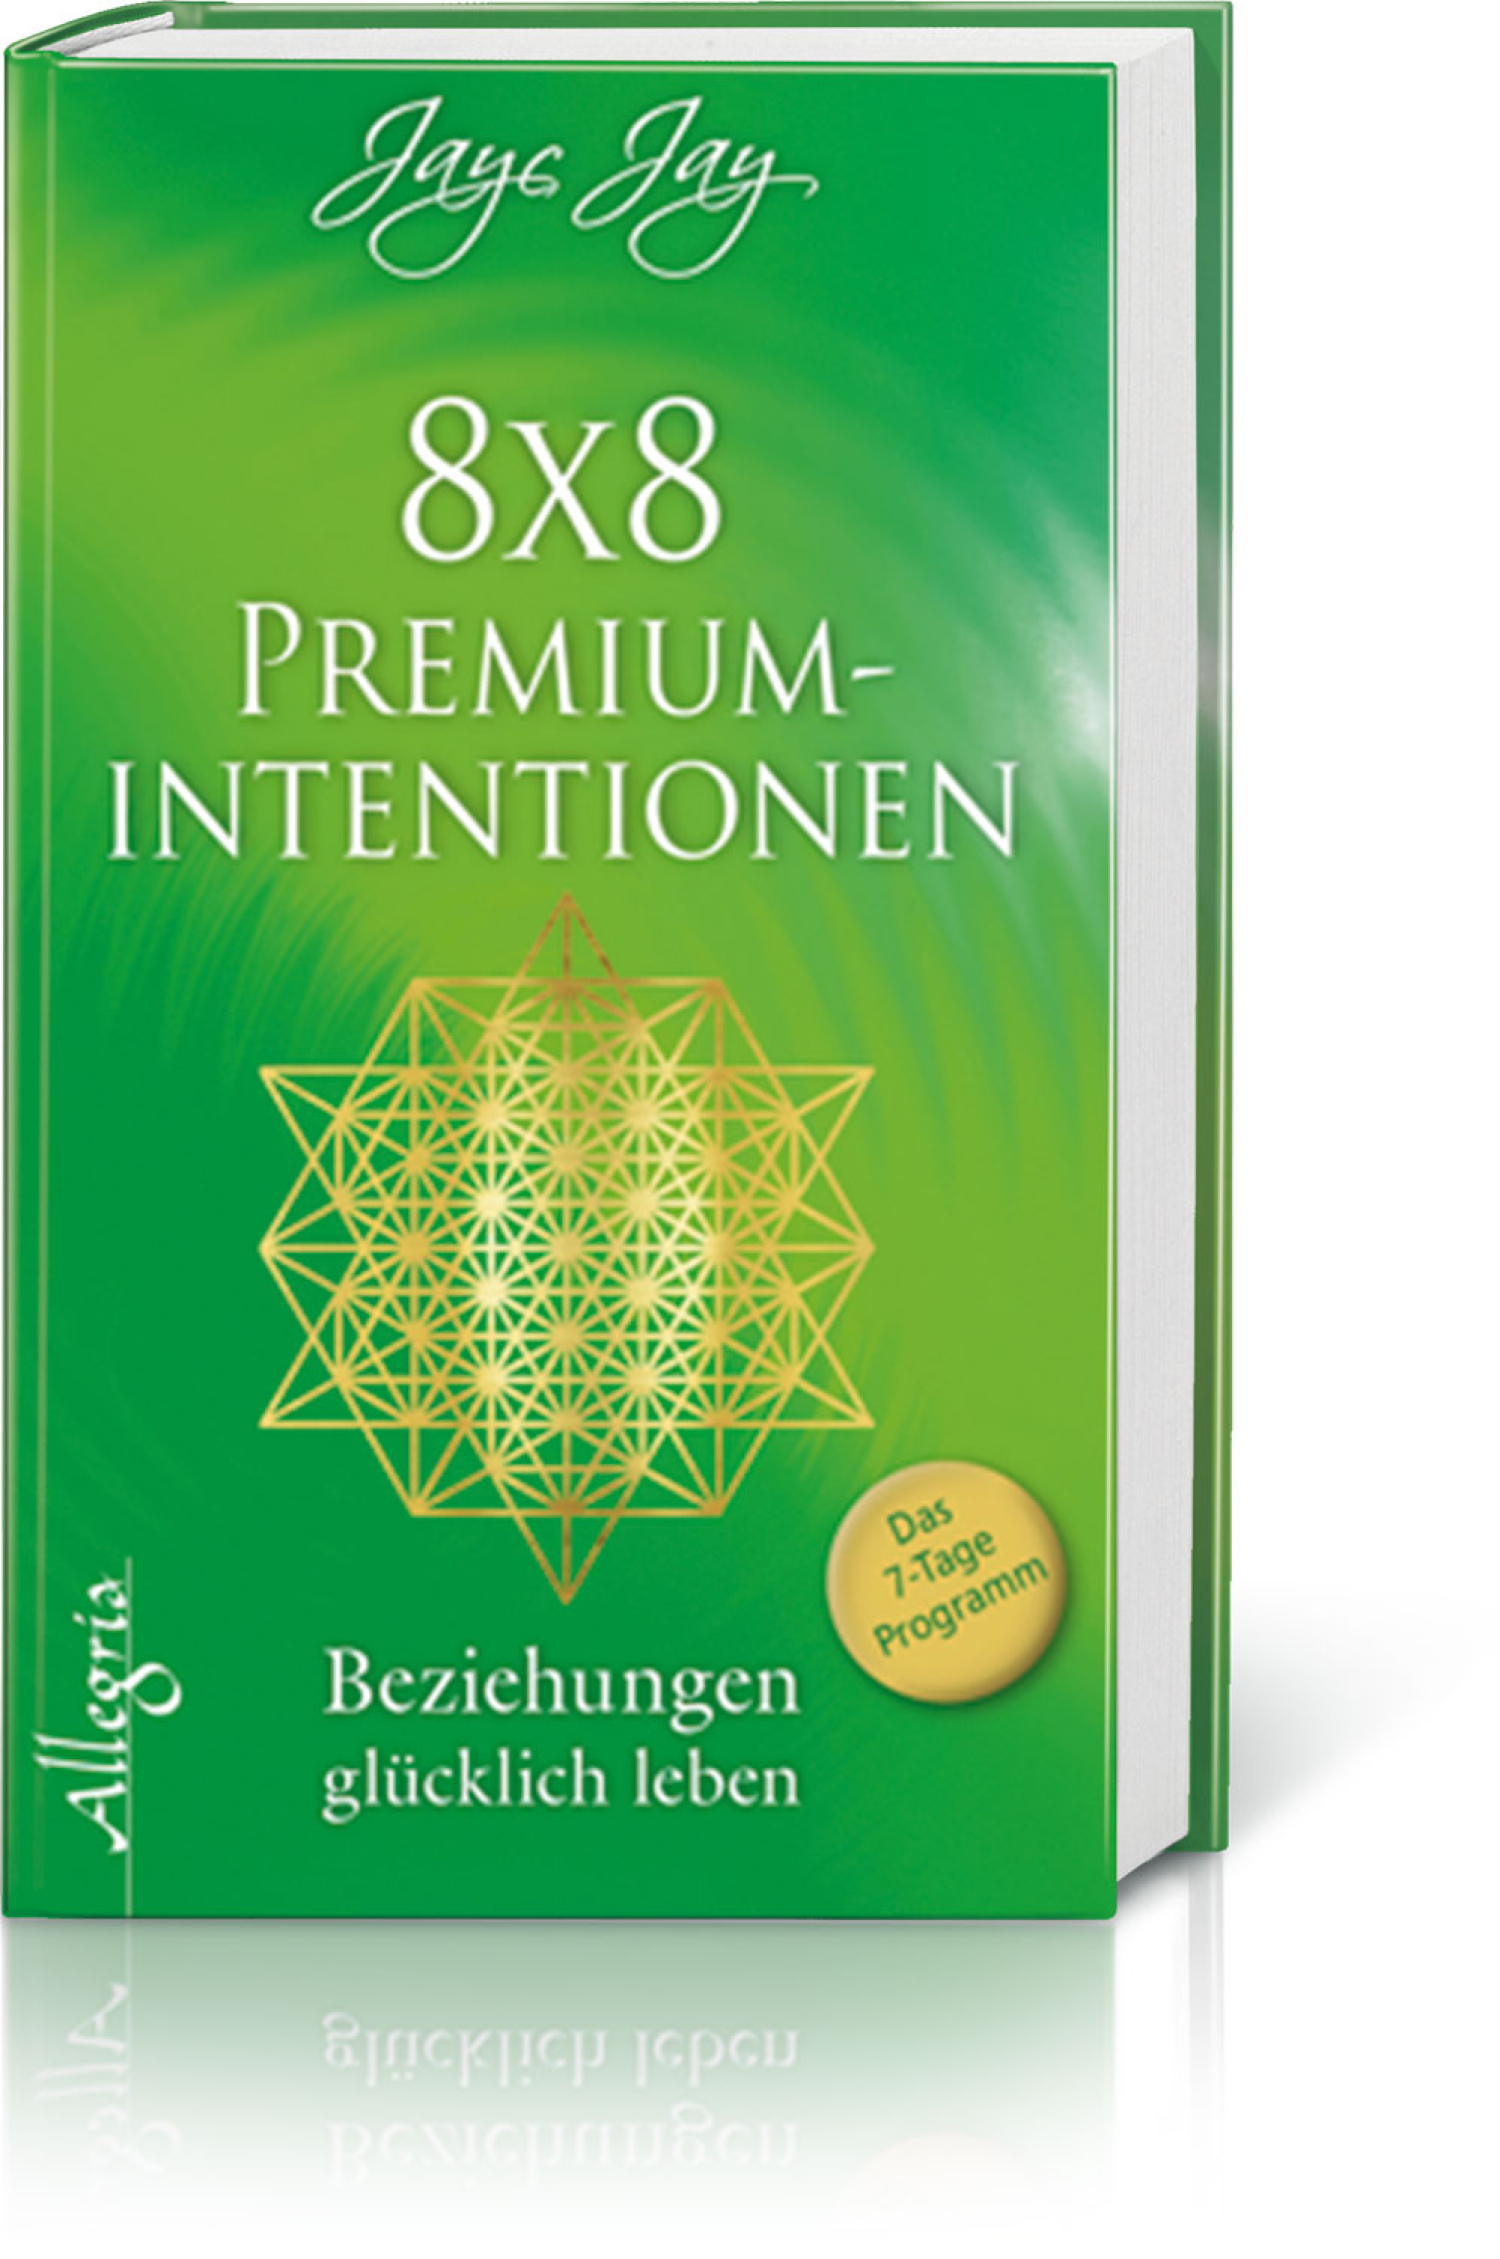 8x8 Premiumintentionen – Beziehungen glücklich leben*, Produktbild 1